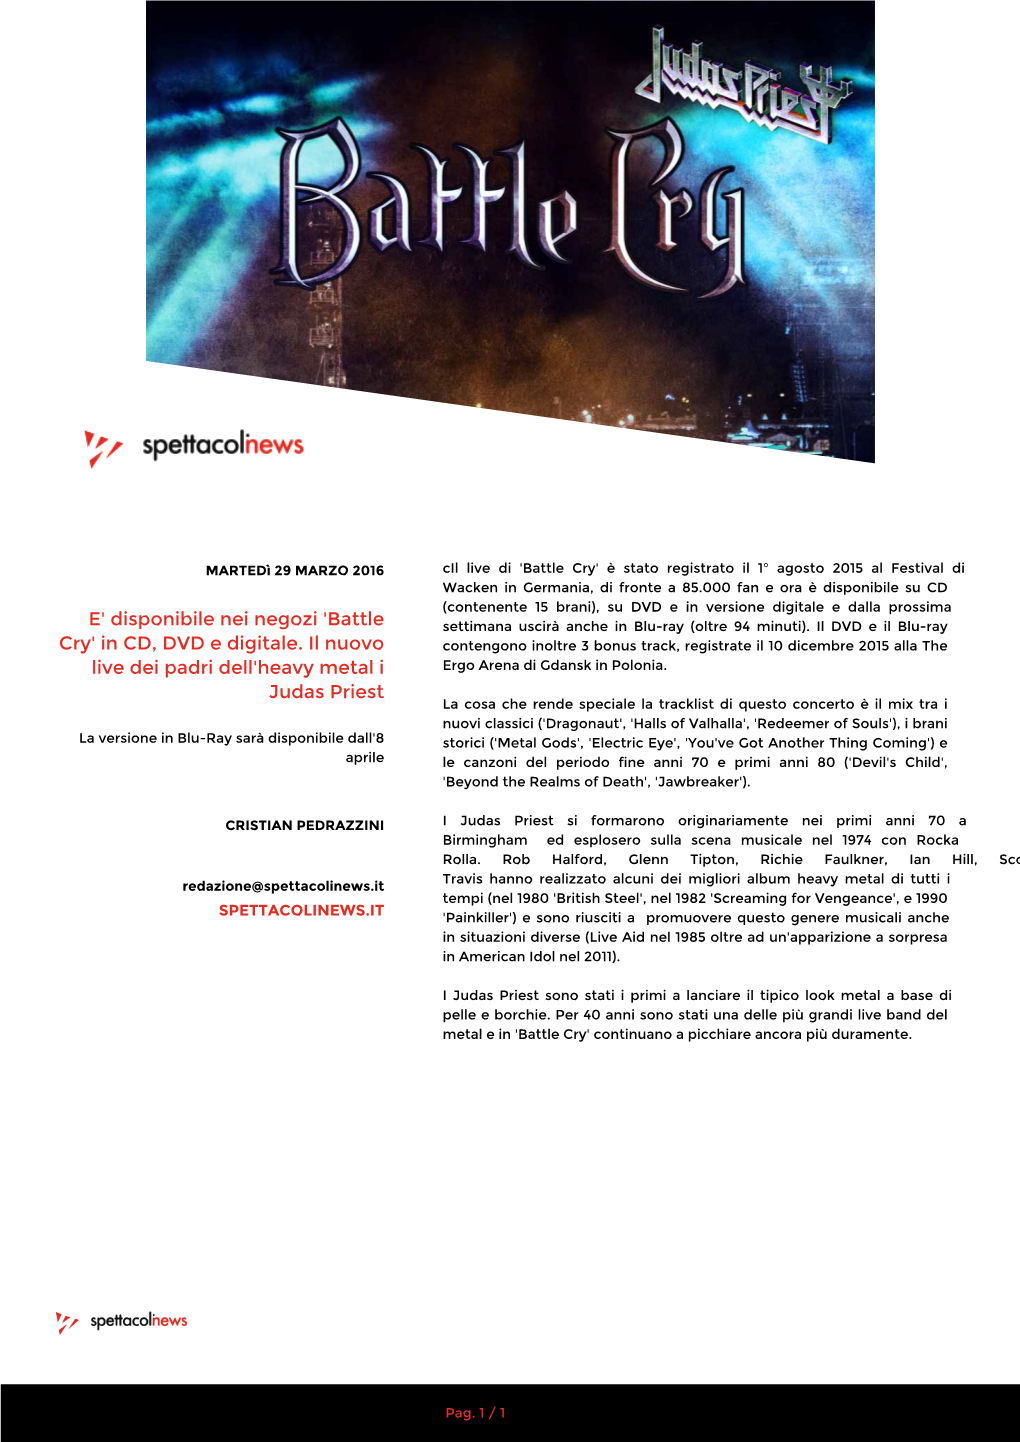 E' Disponibile Nei Negozi 'Battle Cry' in CD, DVD E Digitale. Il Nuovo Live Dei